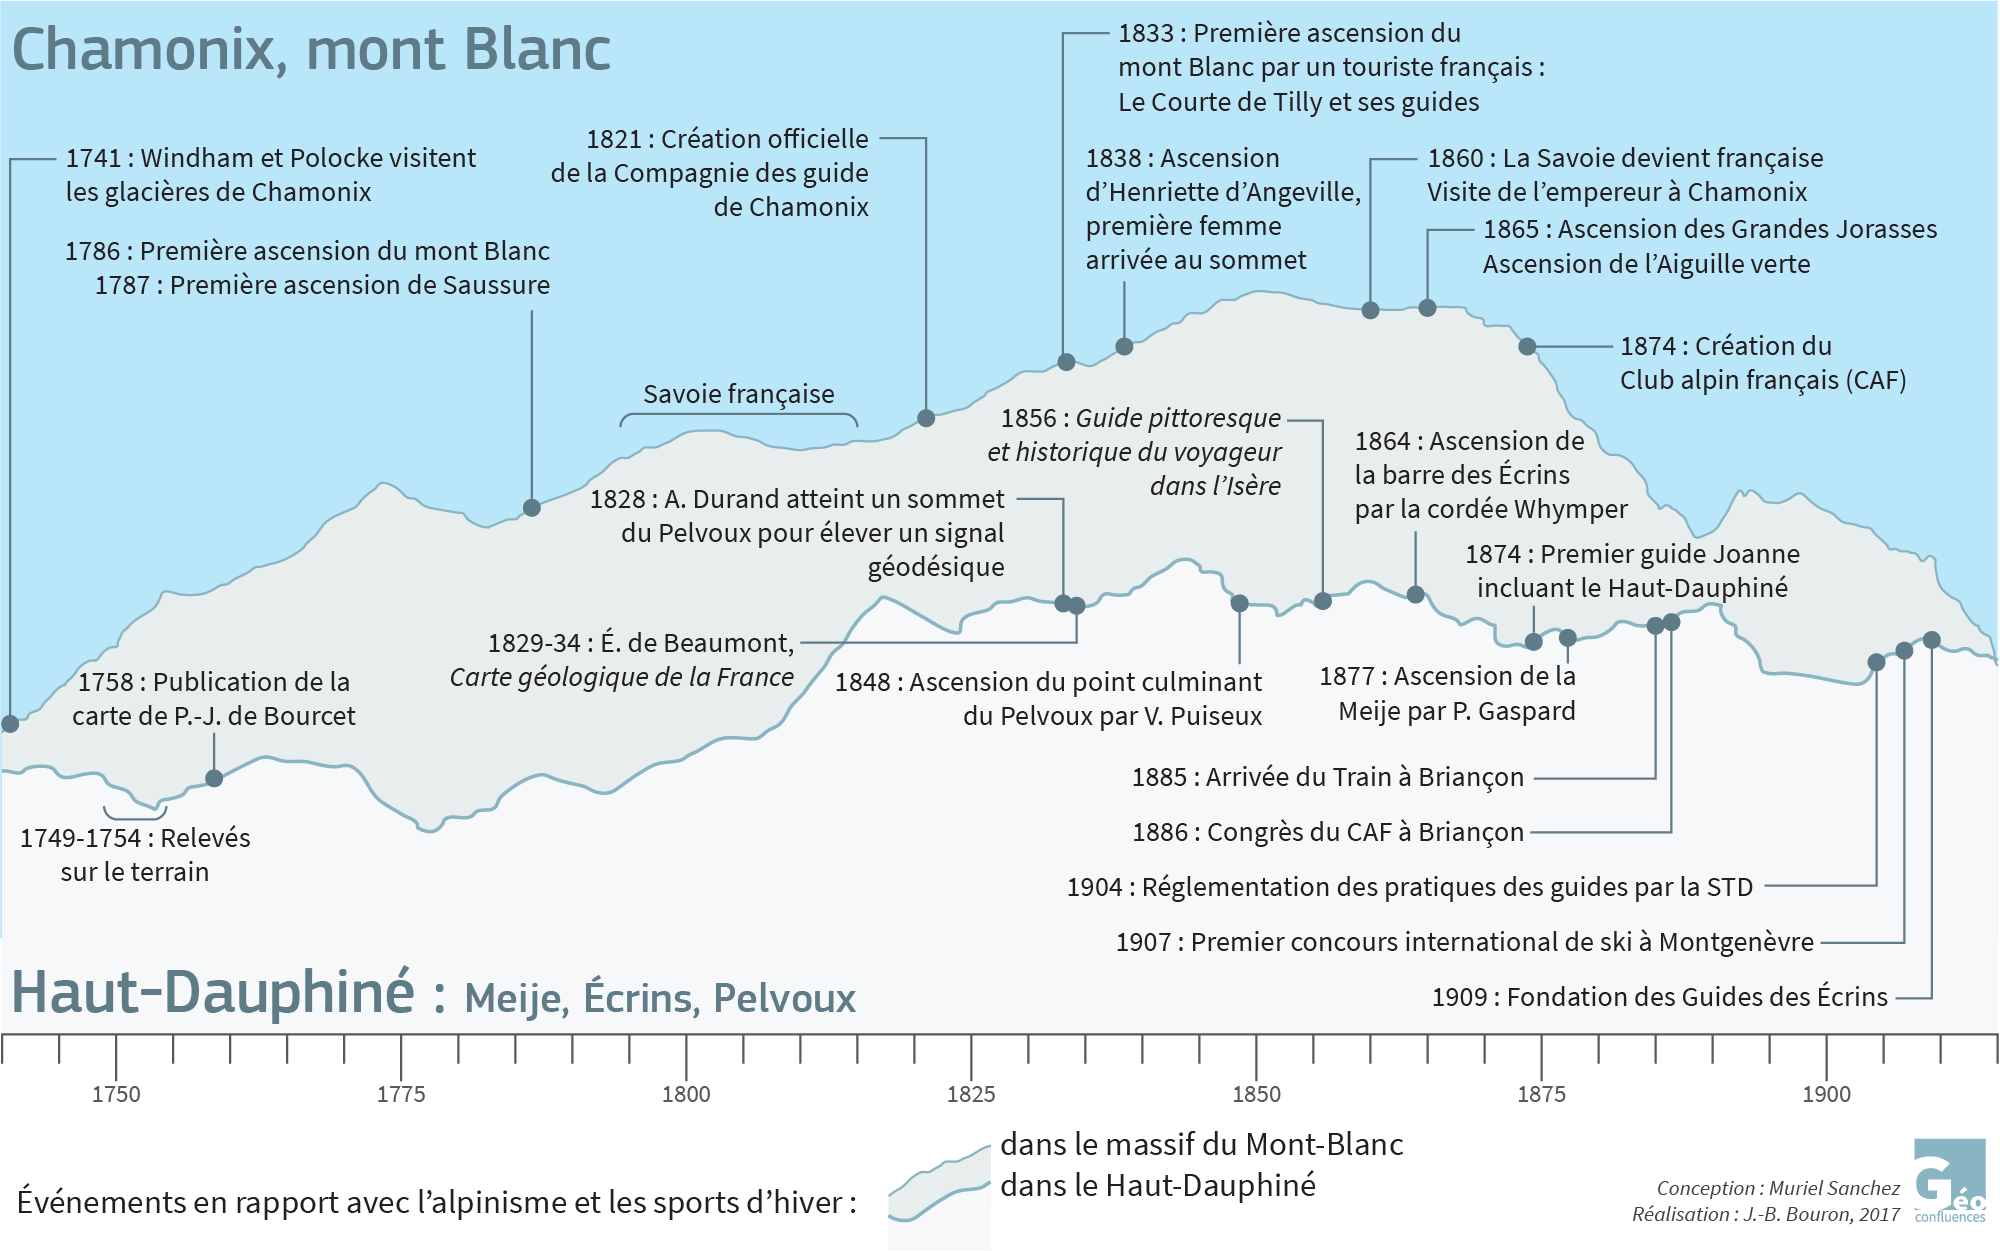 Chronologie des ascensions dans les massifs du Mont-Blanc et du Haut-Dauphiné